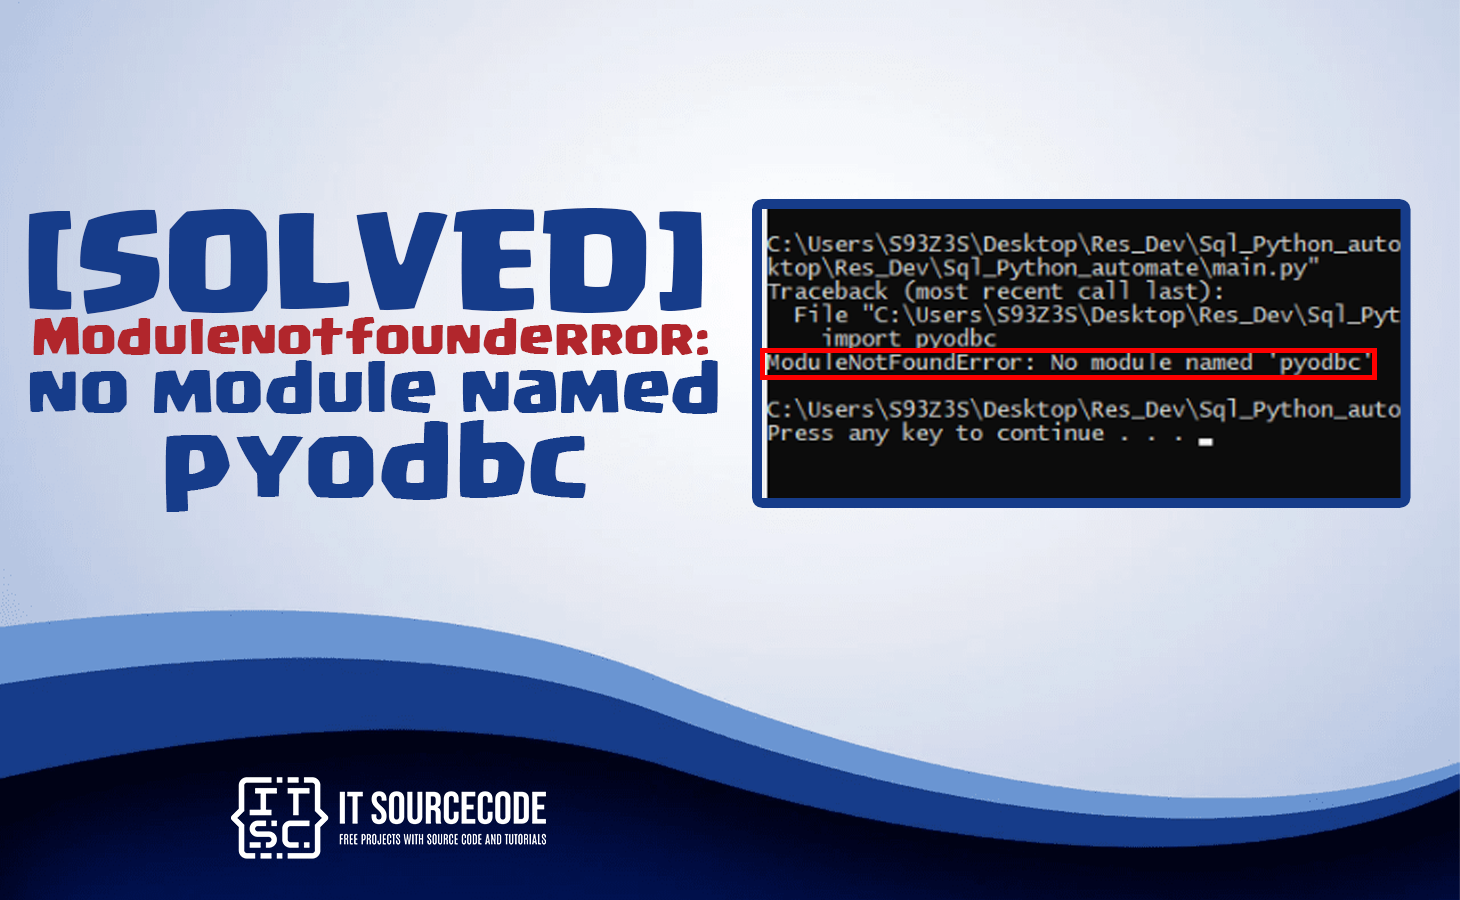 Modulenotfounderror: no module named 'pyodbc' [SOLVED]